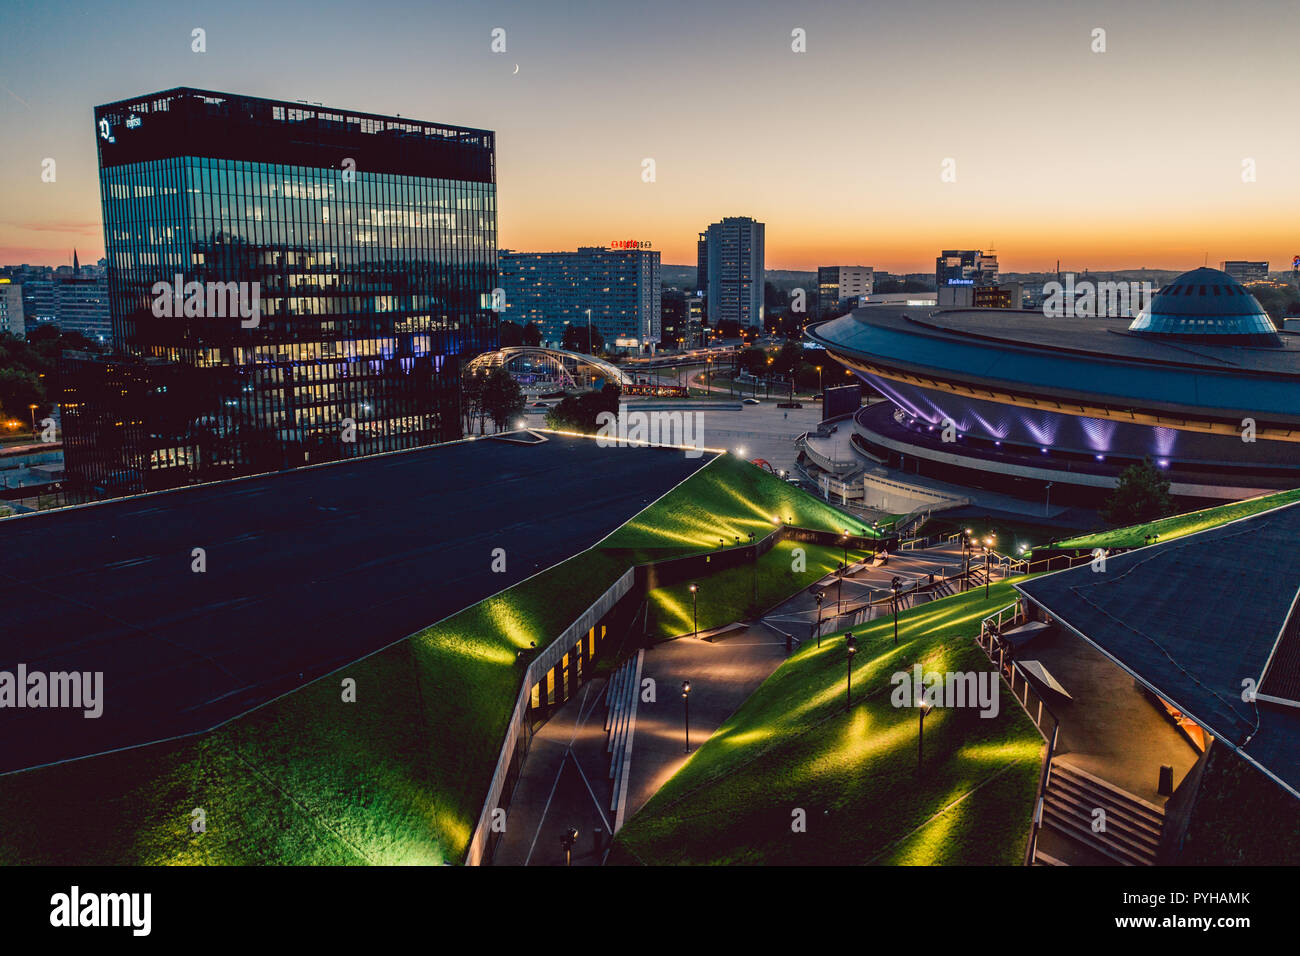 KATOWICE, Polen - 12. SEPTEMBER 2018: Das moderne Stadtzentrum von Katowice mit grünem Dach des Internationalen Congress Center und der berühmten Spodek Sport Stockfoto